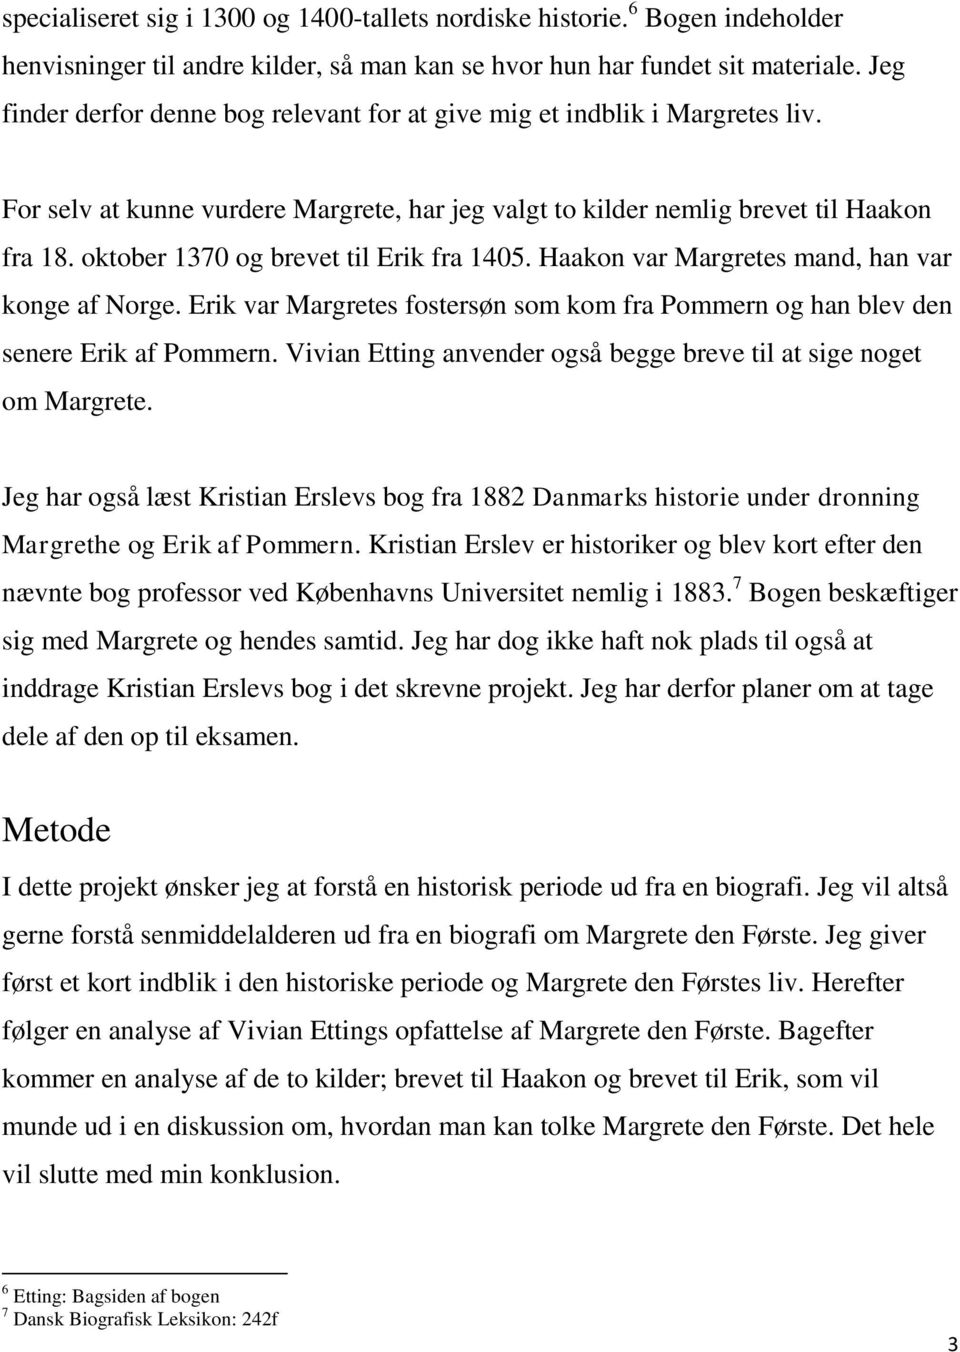 oktober 1370 og brevet til Erik fra 1405. Haakon var Margretes mand, han var konge af Norge. Erik var Margretes fostersøn som kom fra Pommern og han blev den senere Erik af Pommern.